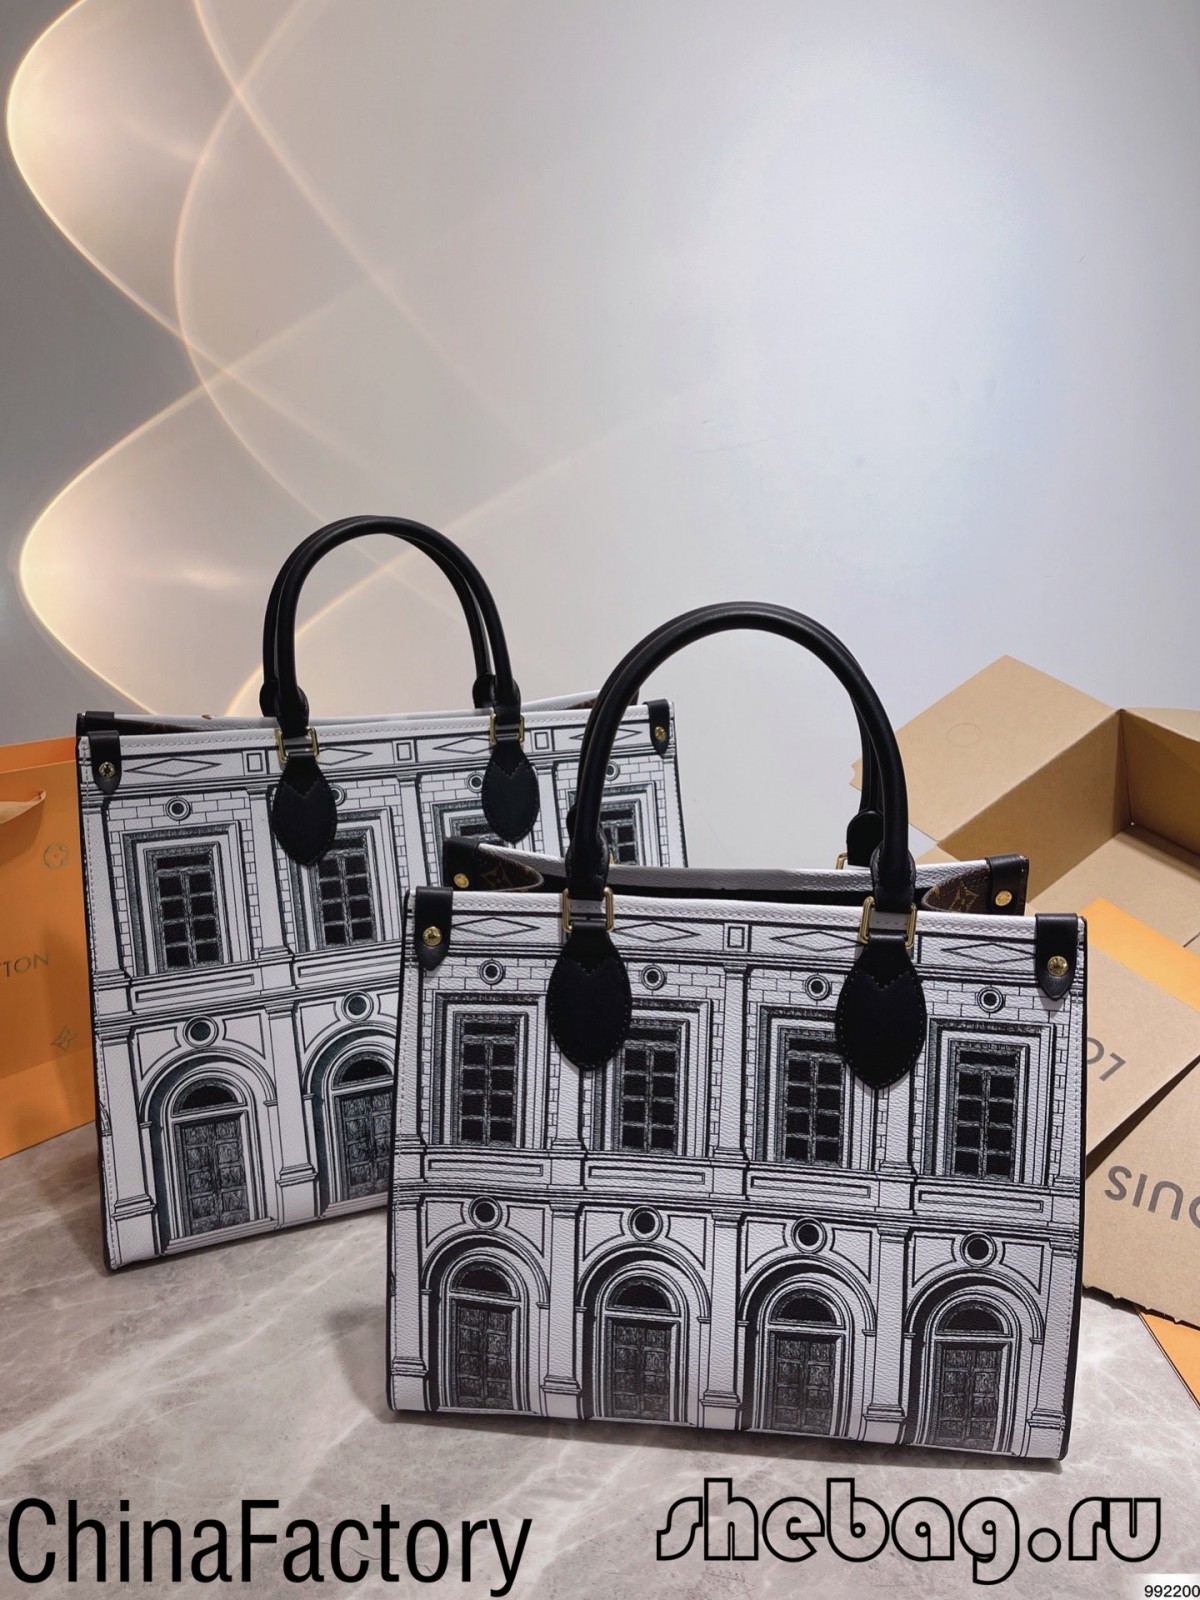 Top 21 più popolari repliche borse firmate recensione (2022 aggiornato)-Best qualità Fake Louis Vuitton Bag Online Store, Replica designer bag ru